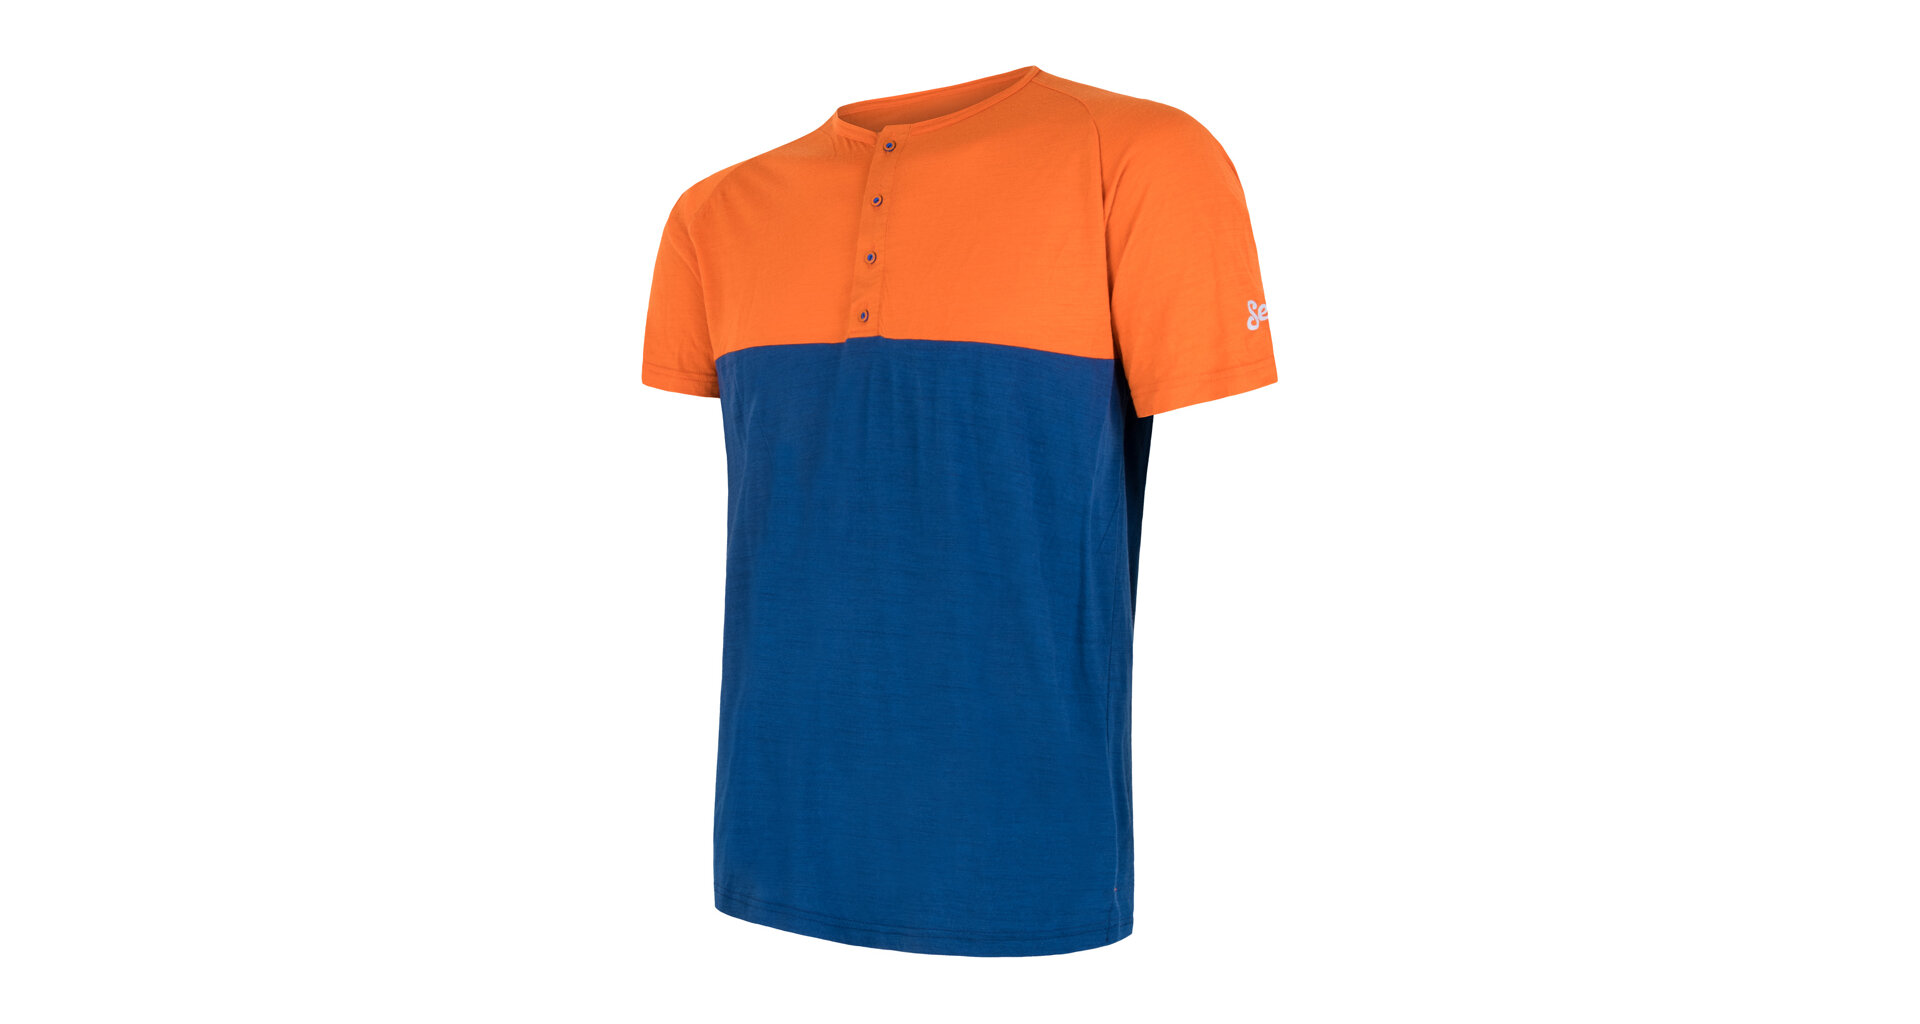 SENSOR MERINO AIR PT pánské triko kr.rukáv s knoflíky oranžová/modrá Velikost: XL